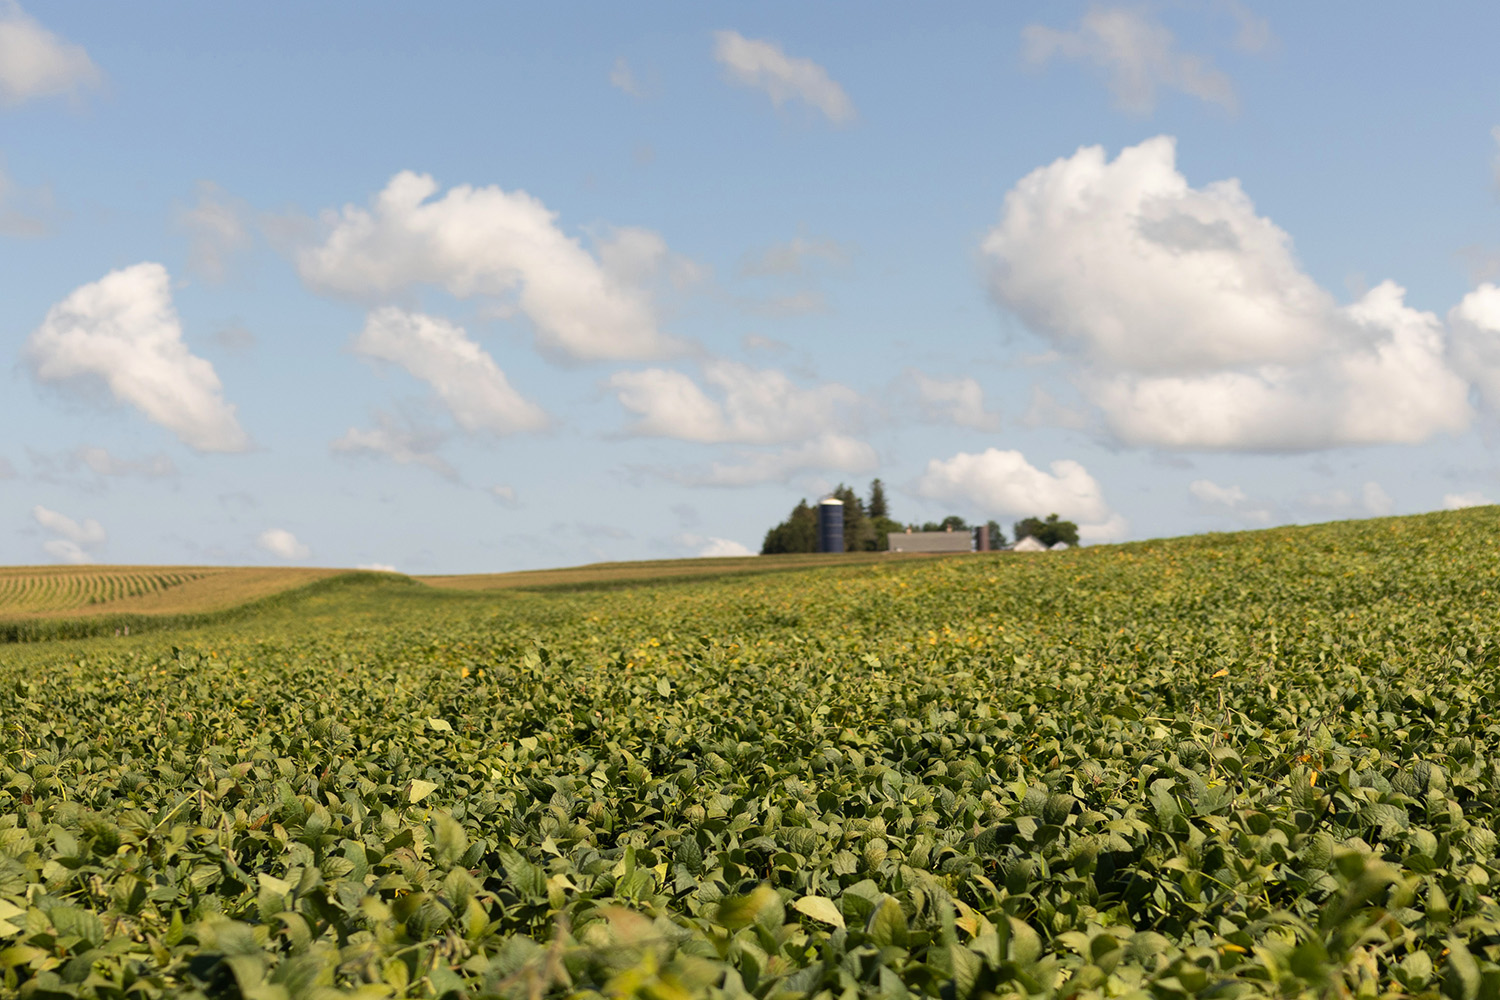 Soybean field in Iowa with farmstead